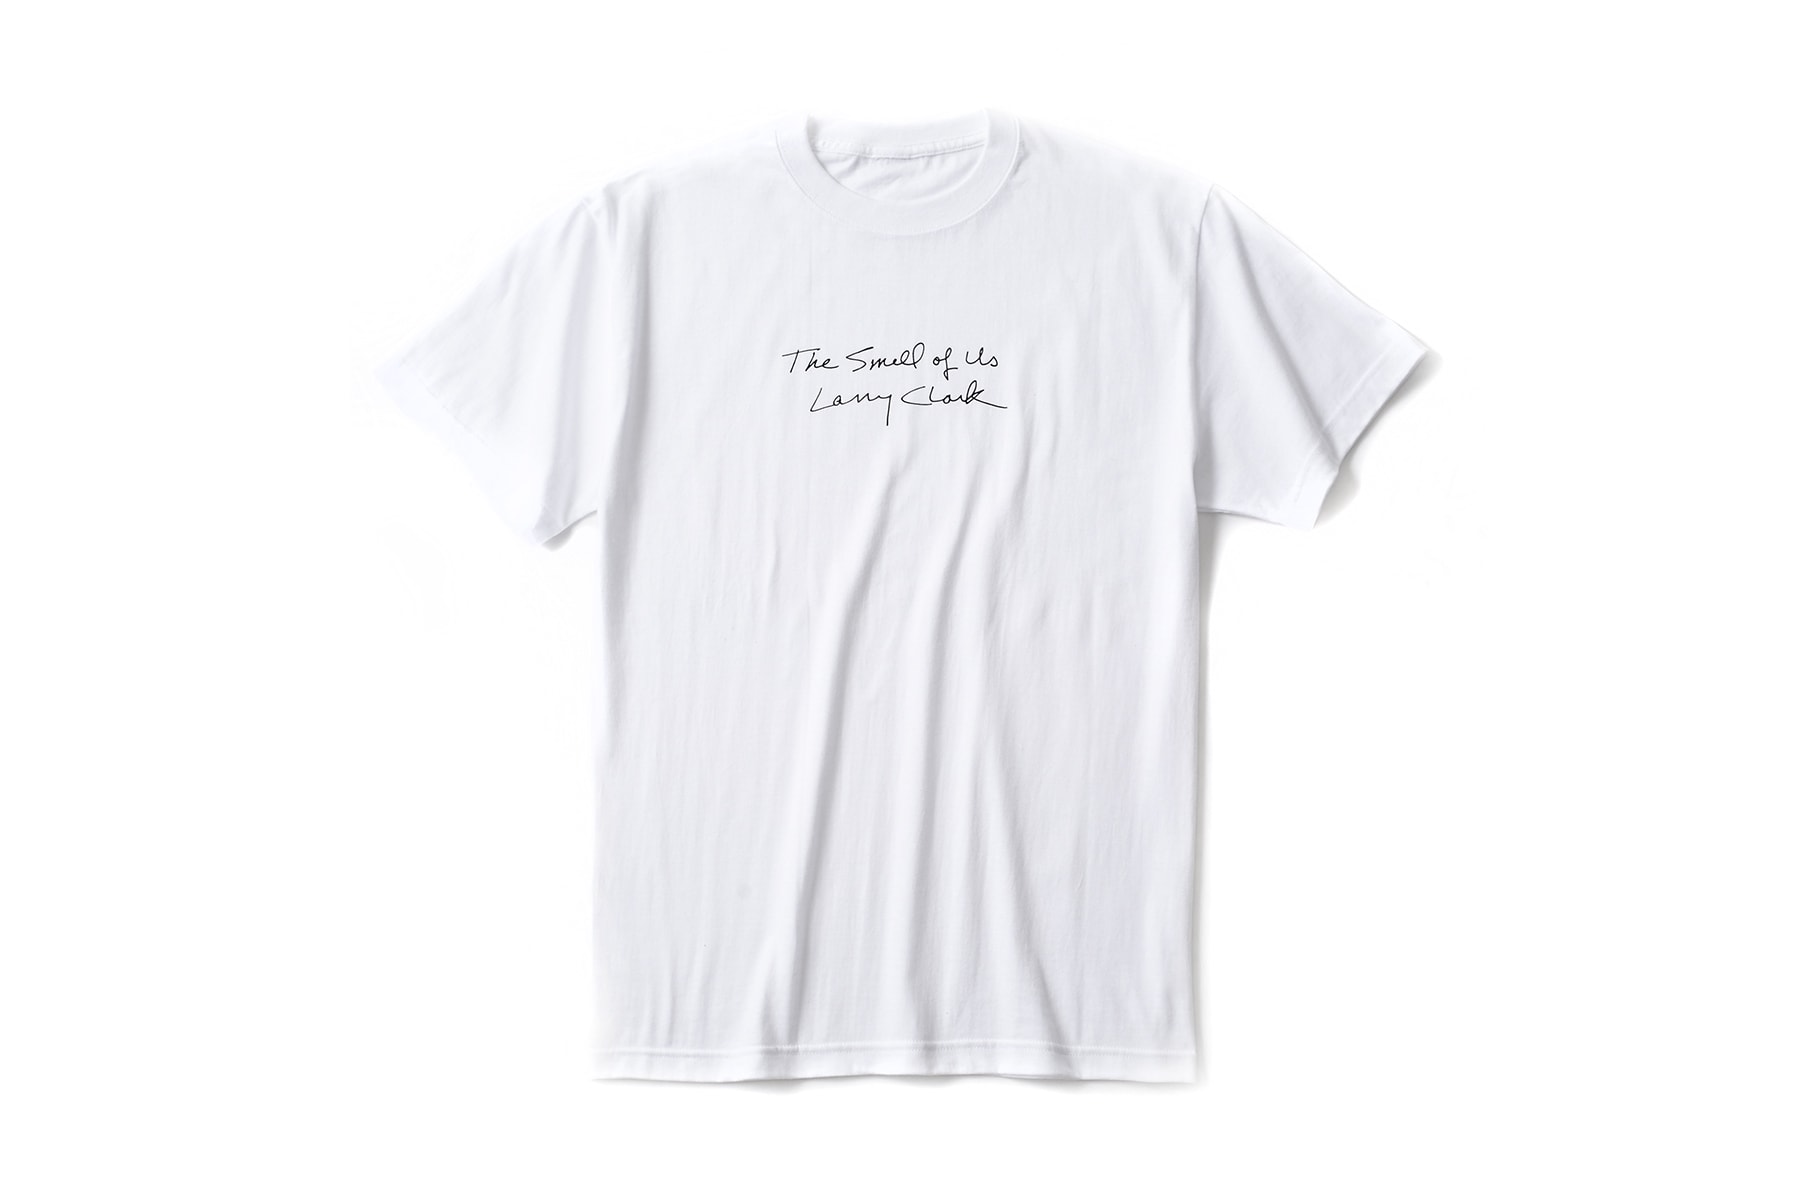 Larry Clark ESTNATION T-Shirt Collection Capsule 